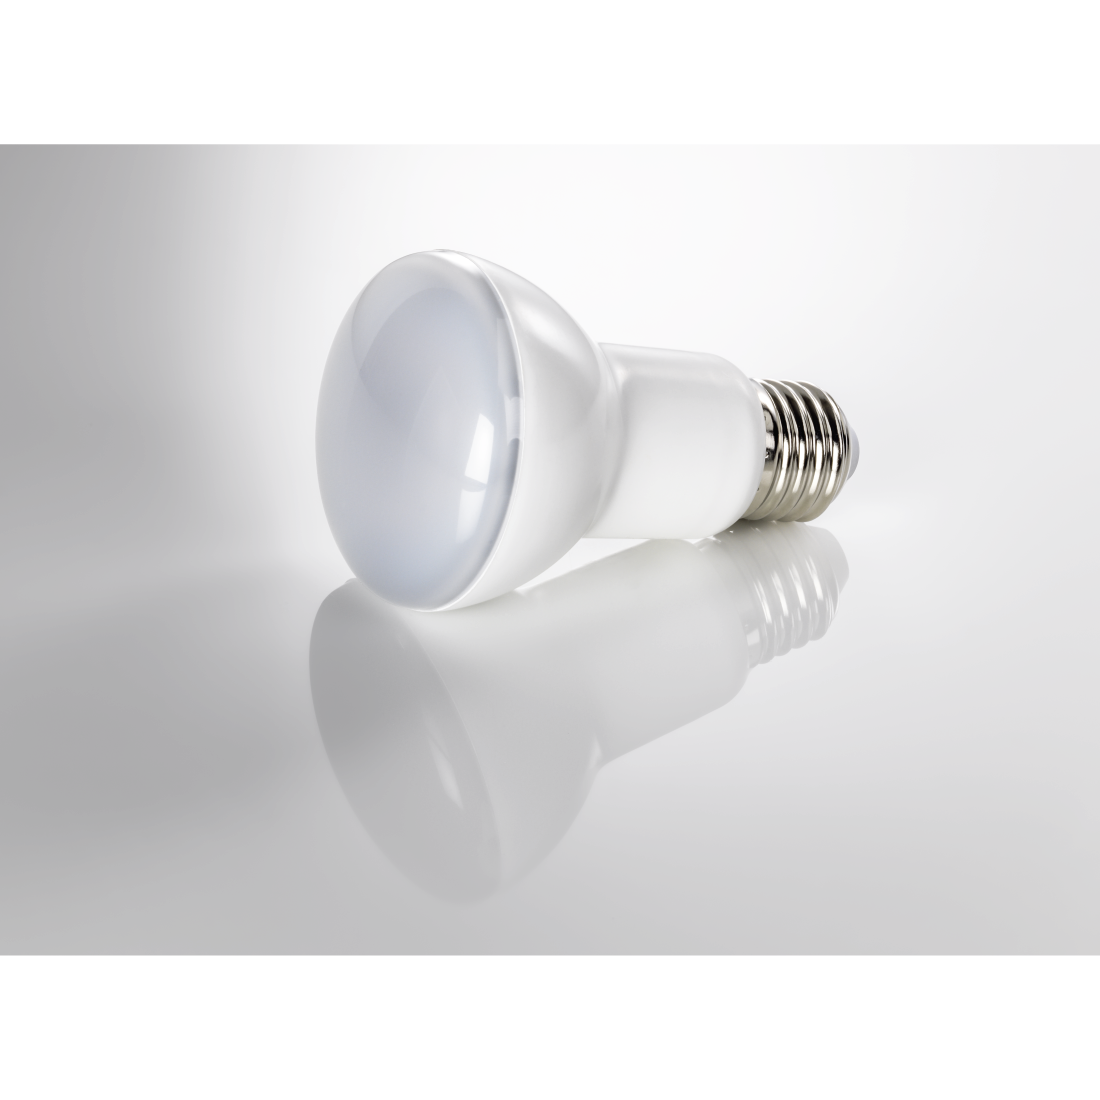 abx3 High-Res Image 3 - Xavax, Ampoule LED, E27, 530lm rempl. ampoule à réfl. 45W R63, blanc chaud